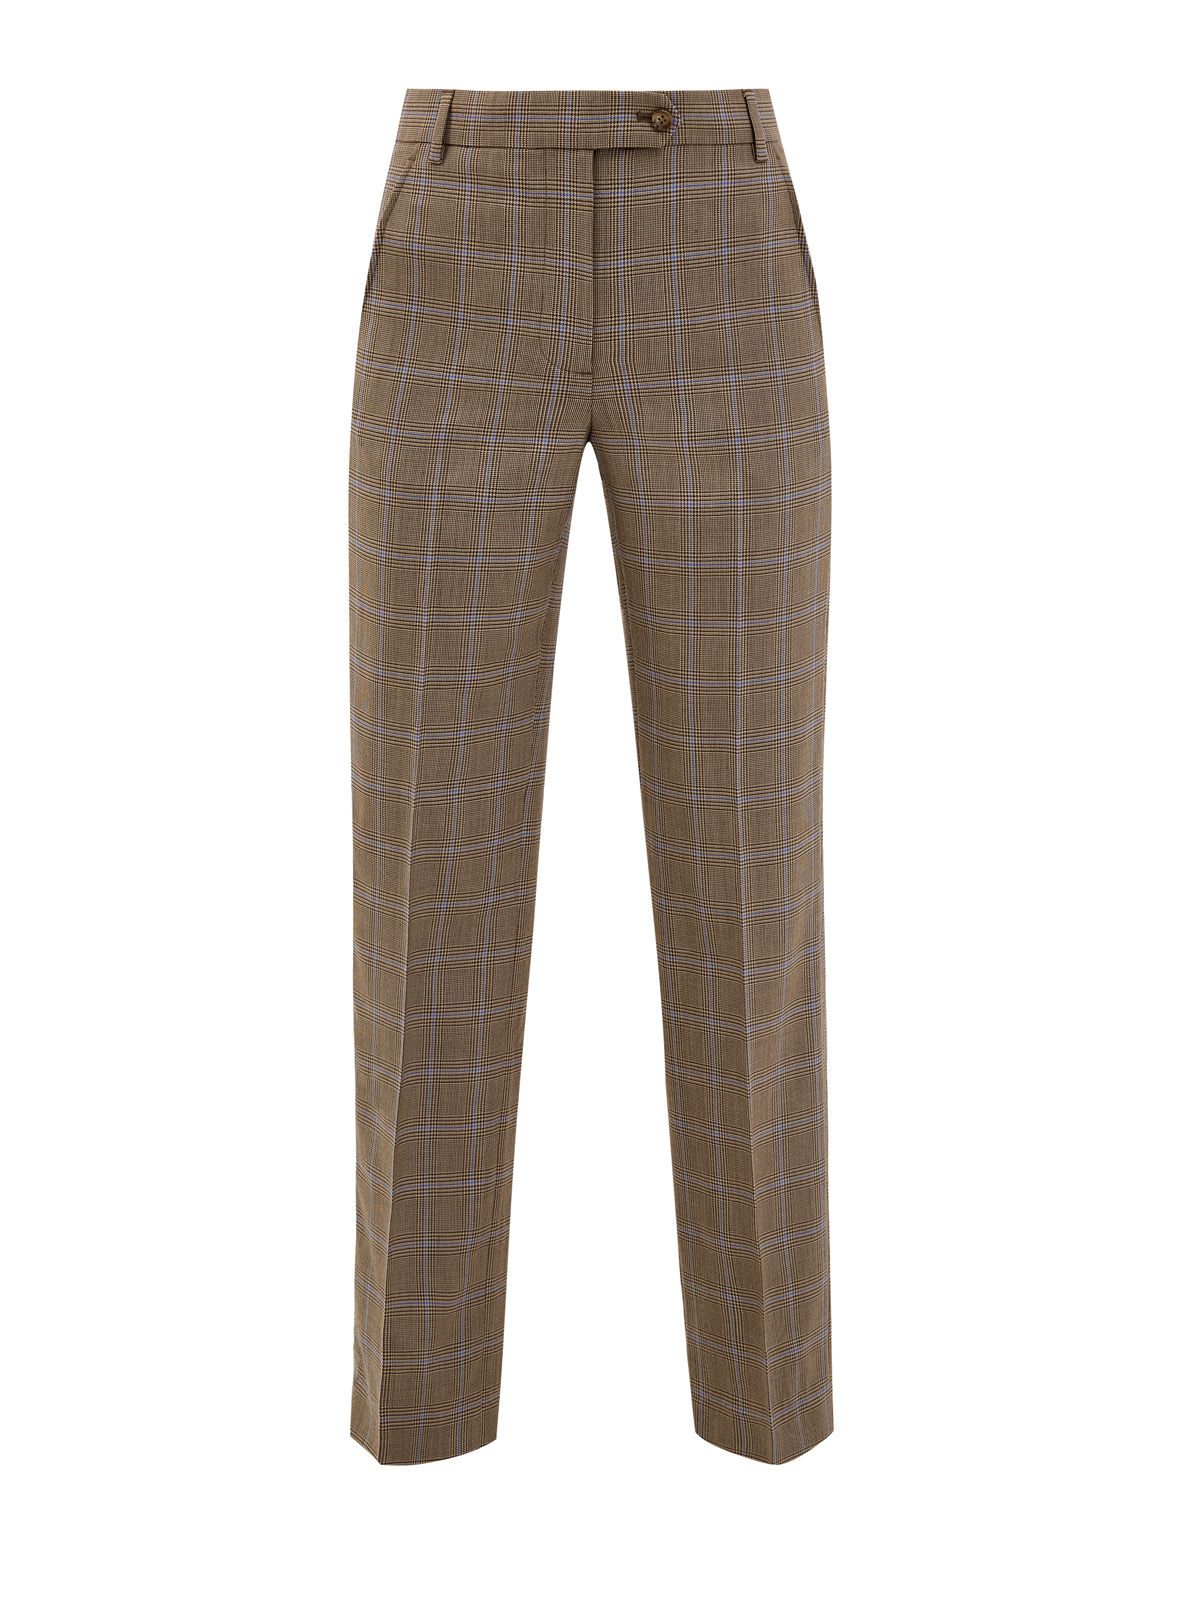 Шерстяные брюки с мелованным принтом в клетку BURBERRY, цвет коричневый, размер M;L;XL - фото 1